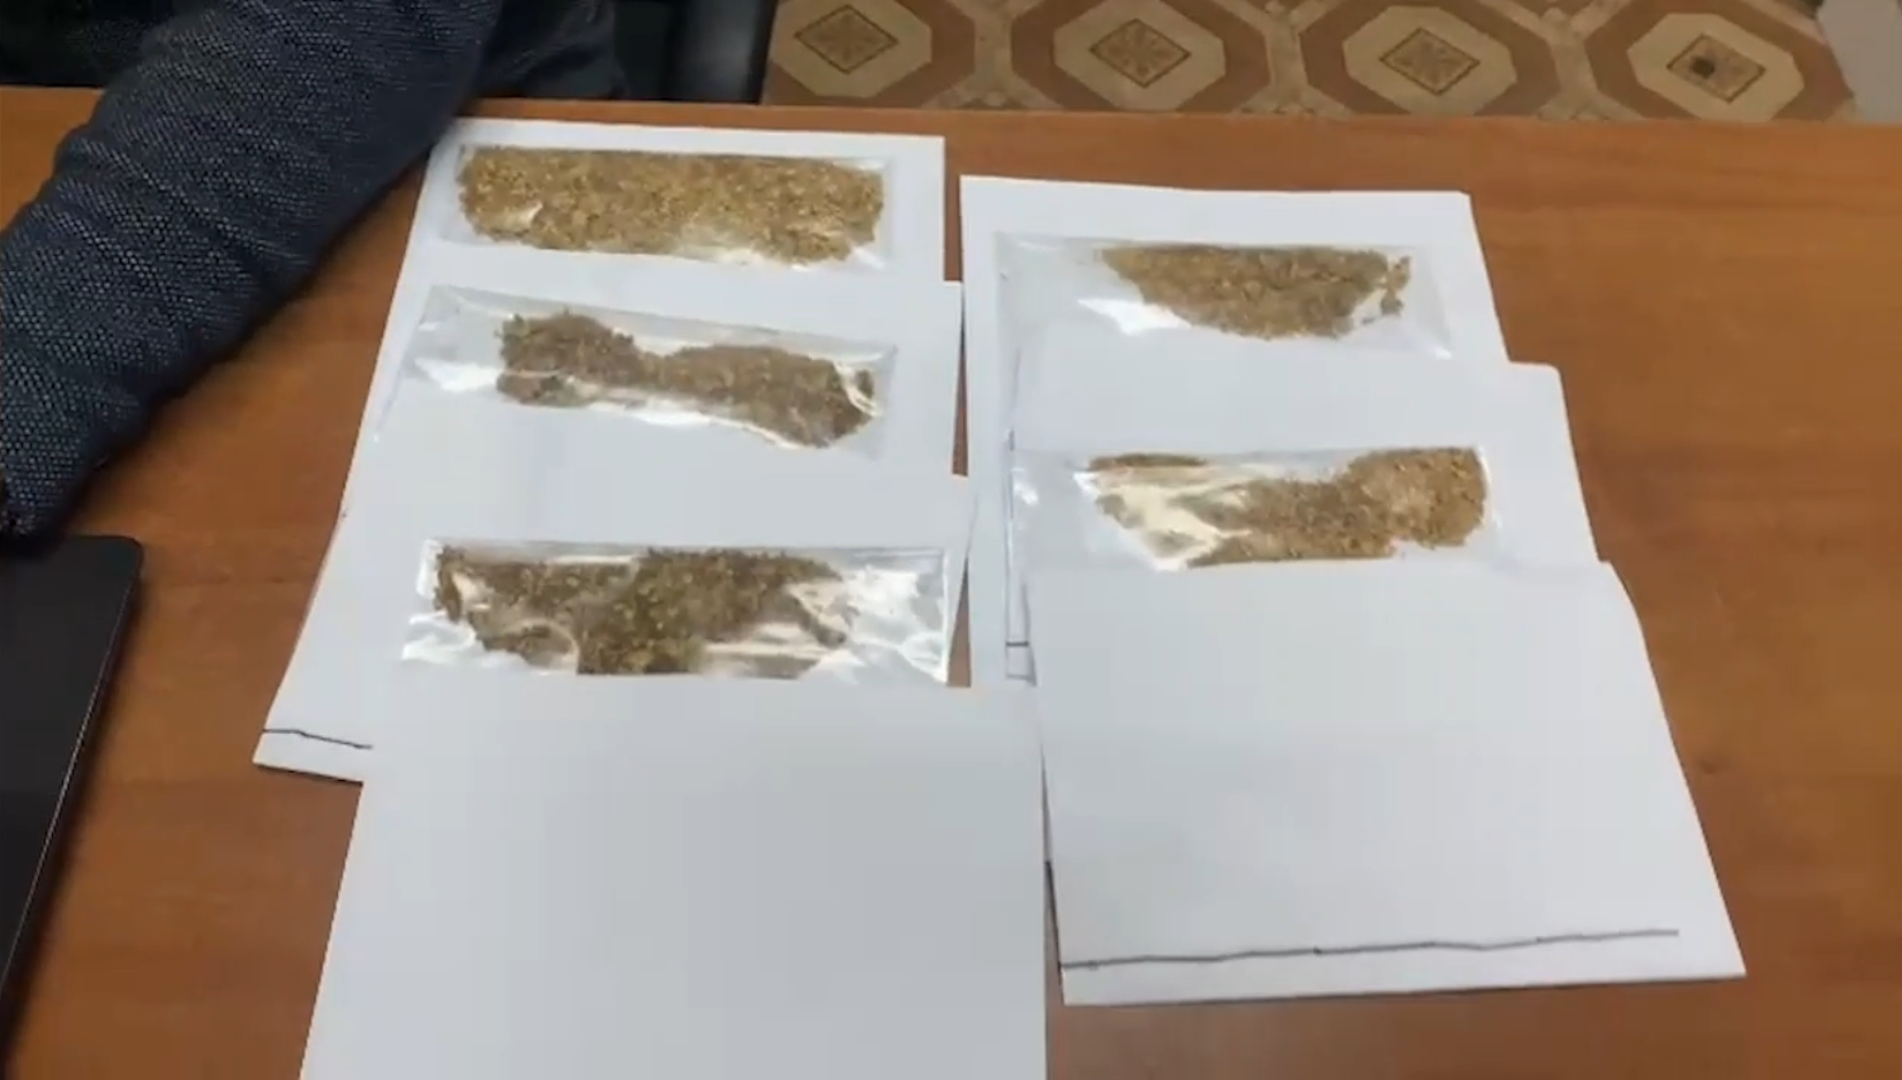 Сварщик пытался вывезти почти килограмм золота в Оймяконском районе Якутии